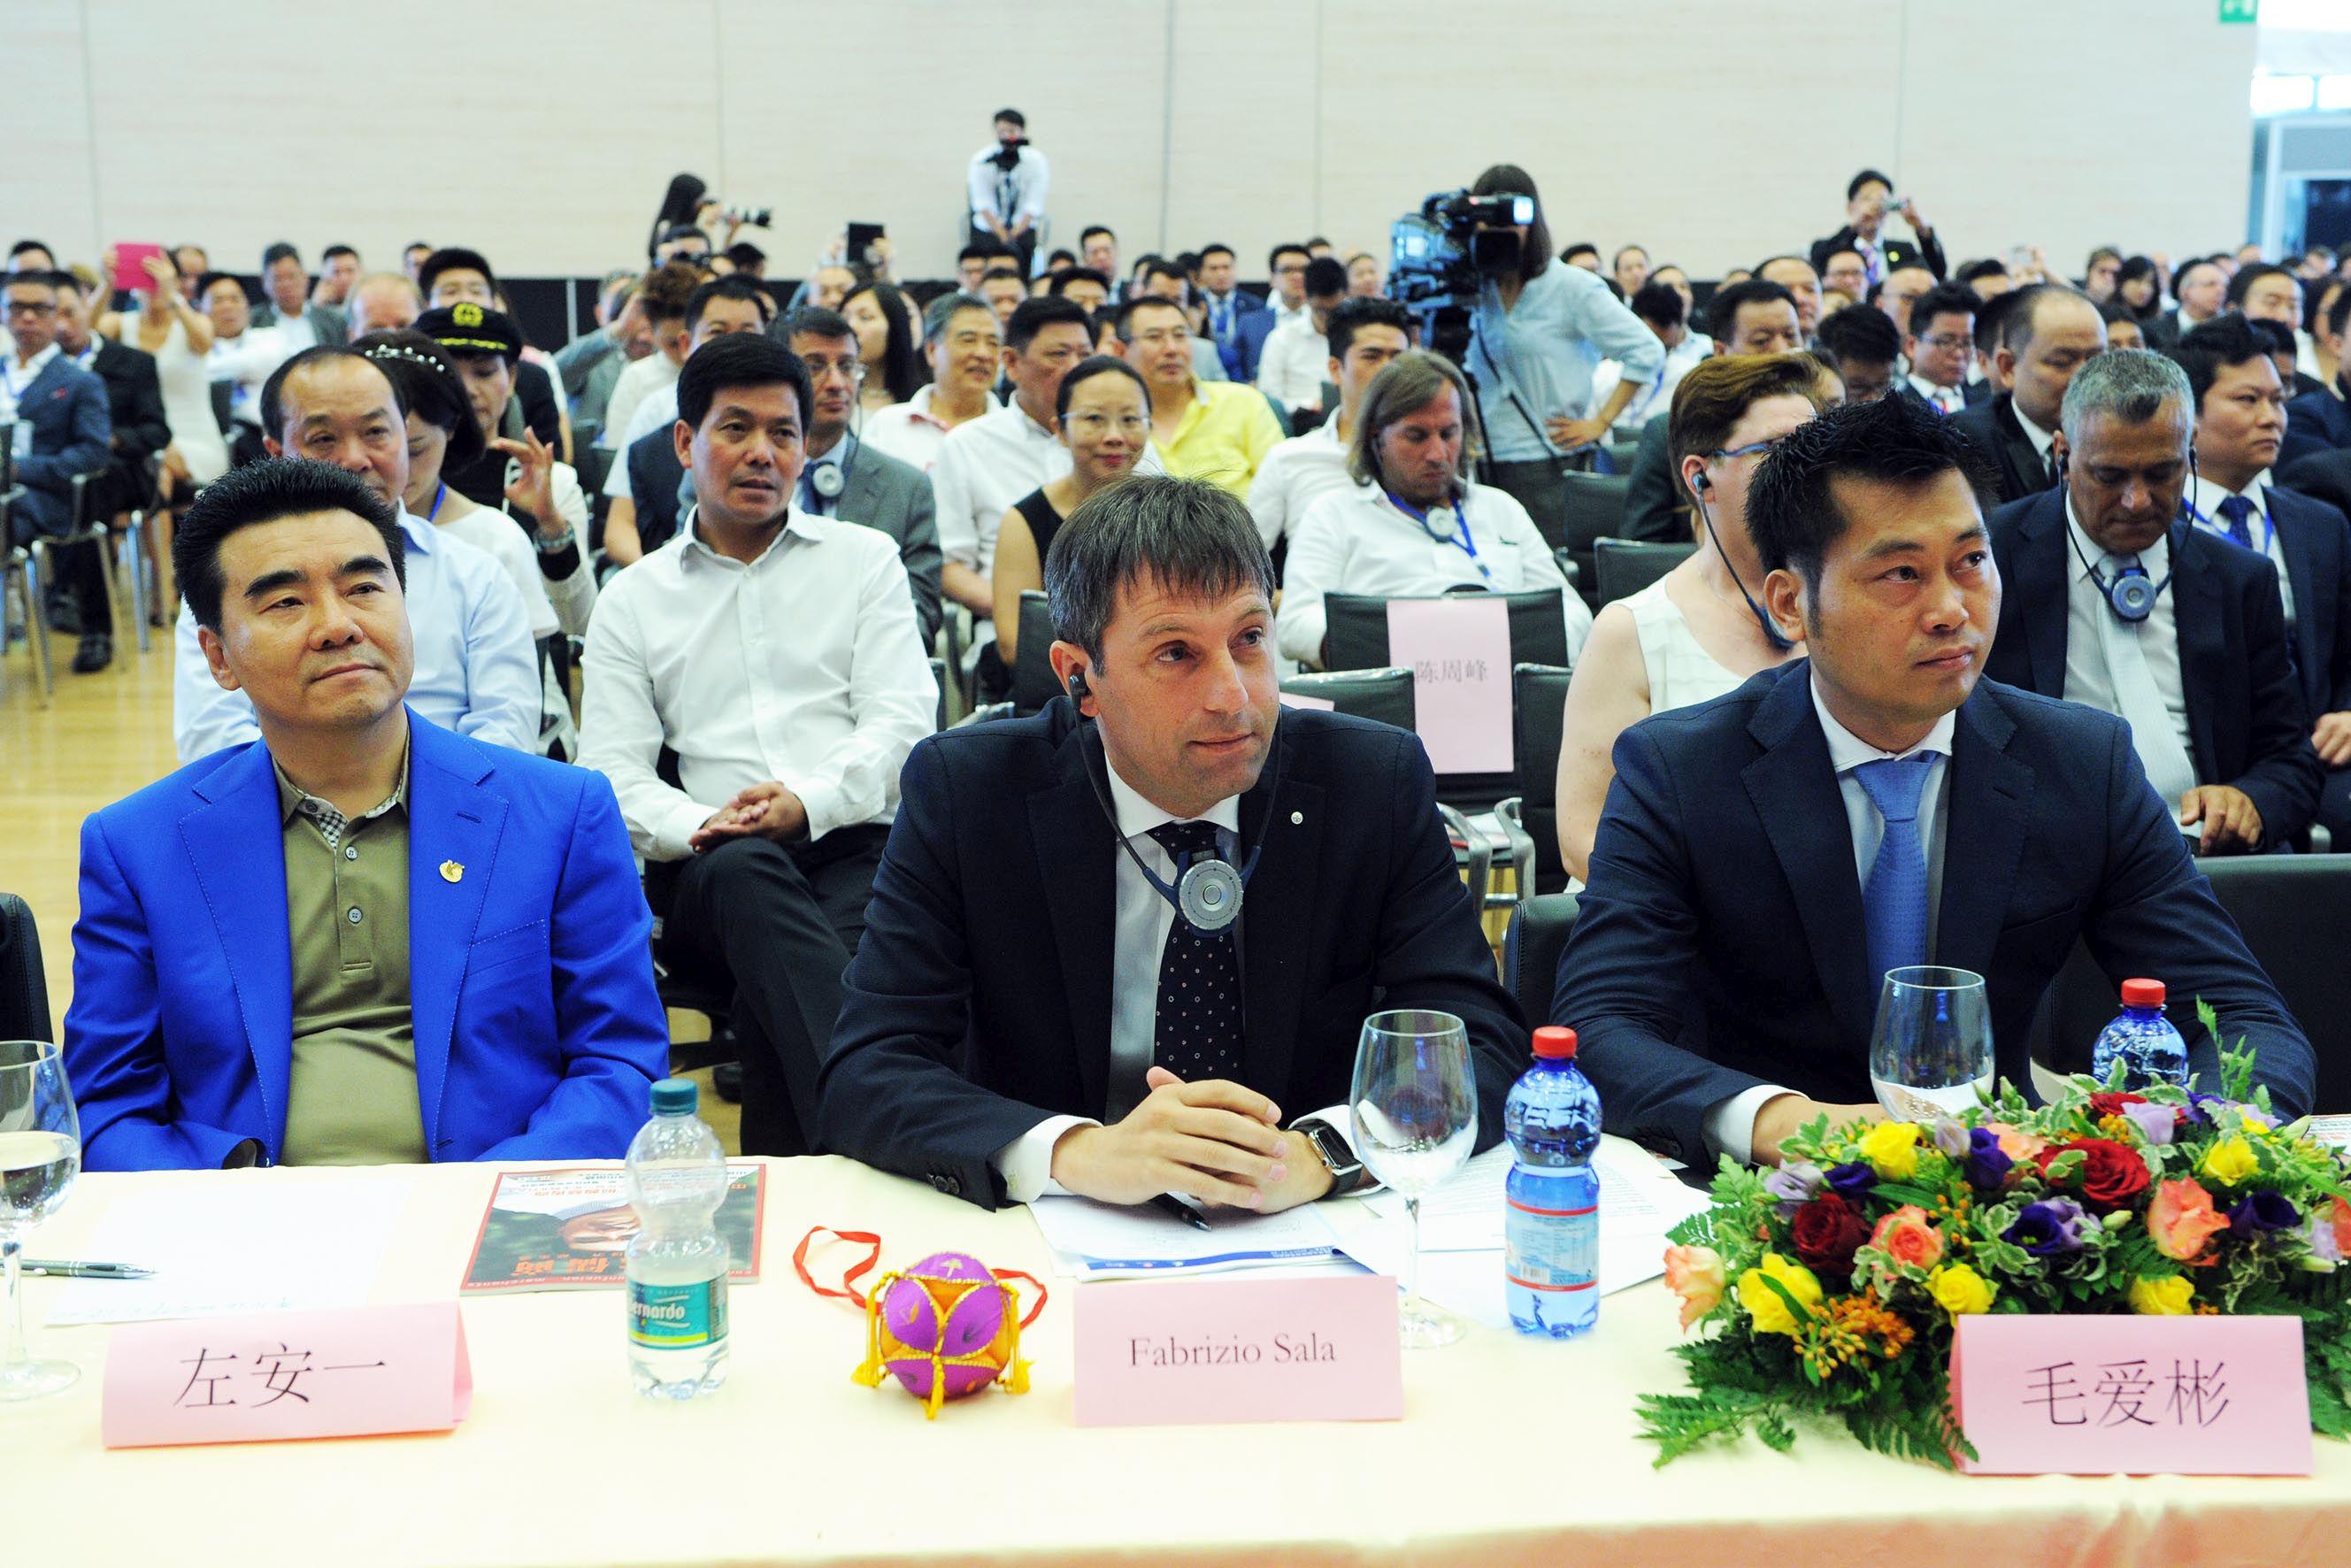 Casinò di Campione d'Italia 9° Forum Mondiale degli Imprenditori Cinesi, Fabrizio Sala Assessore Regione Lombardia con delega Expo